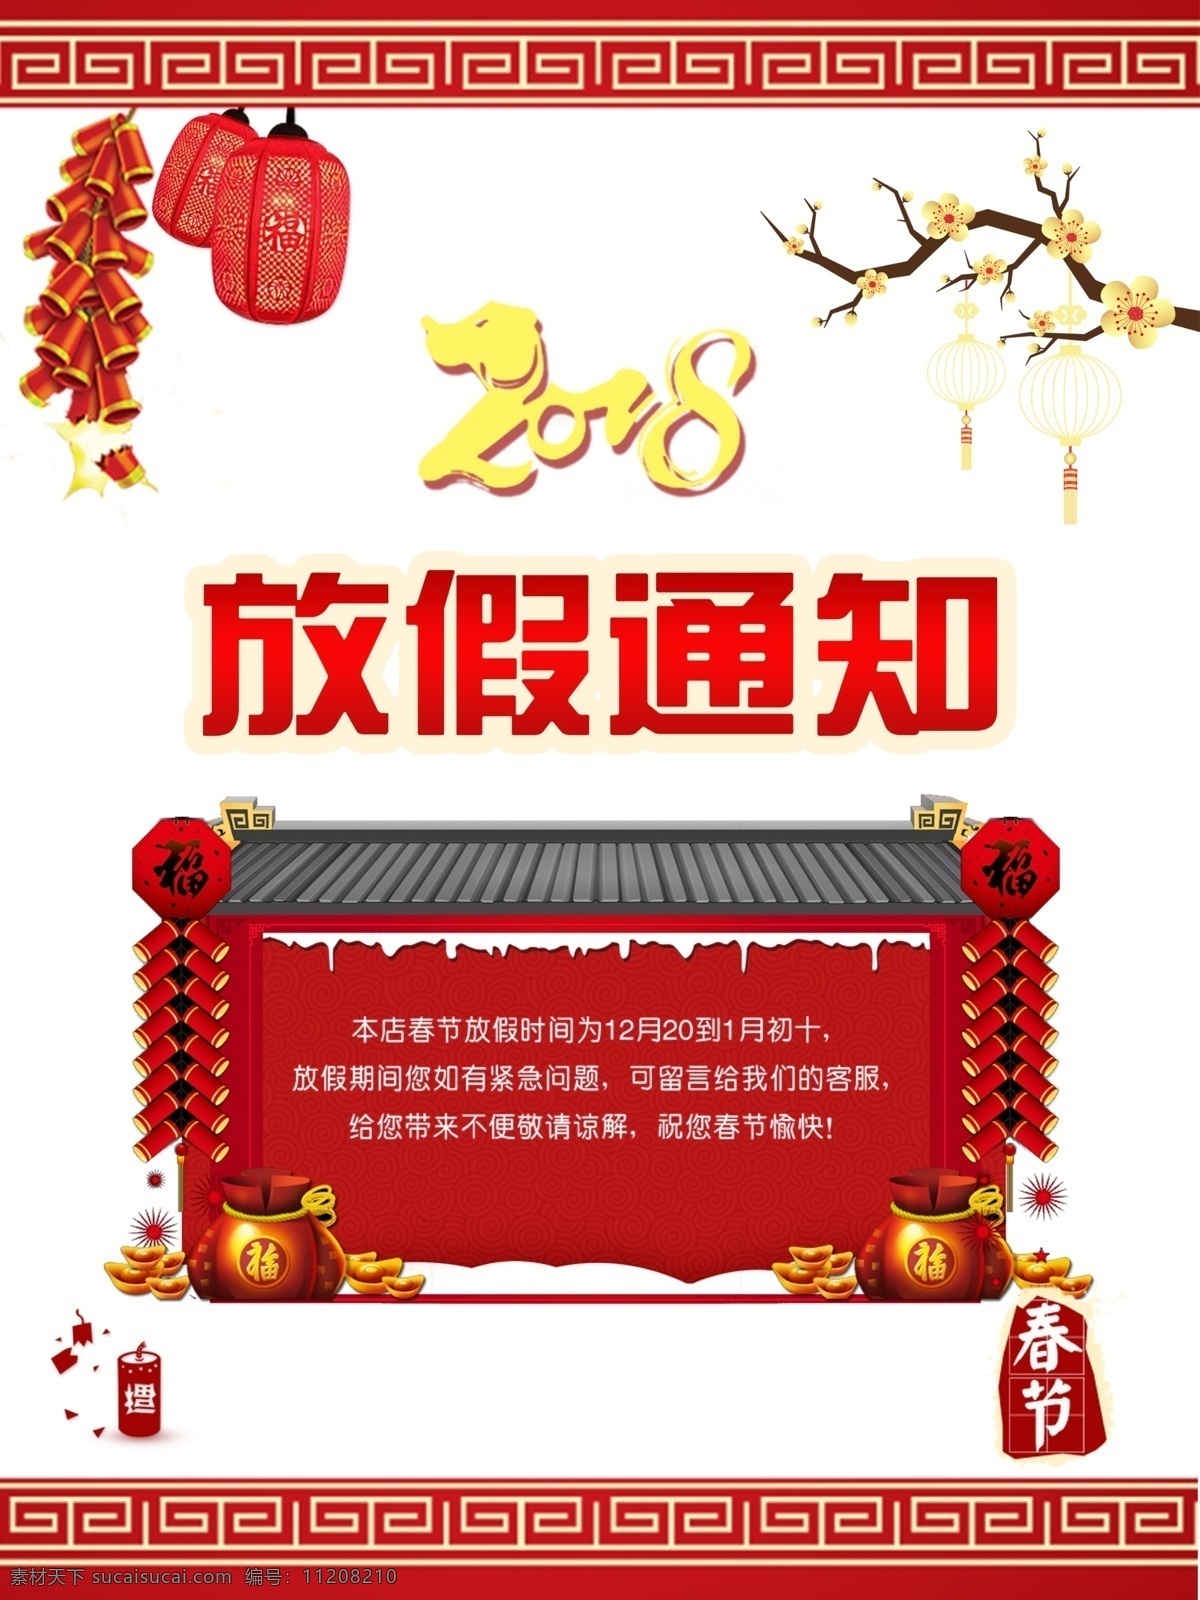 2018 春节 放假 通知 红色 喜庆 海报 放假通知 剪纸 展板